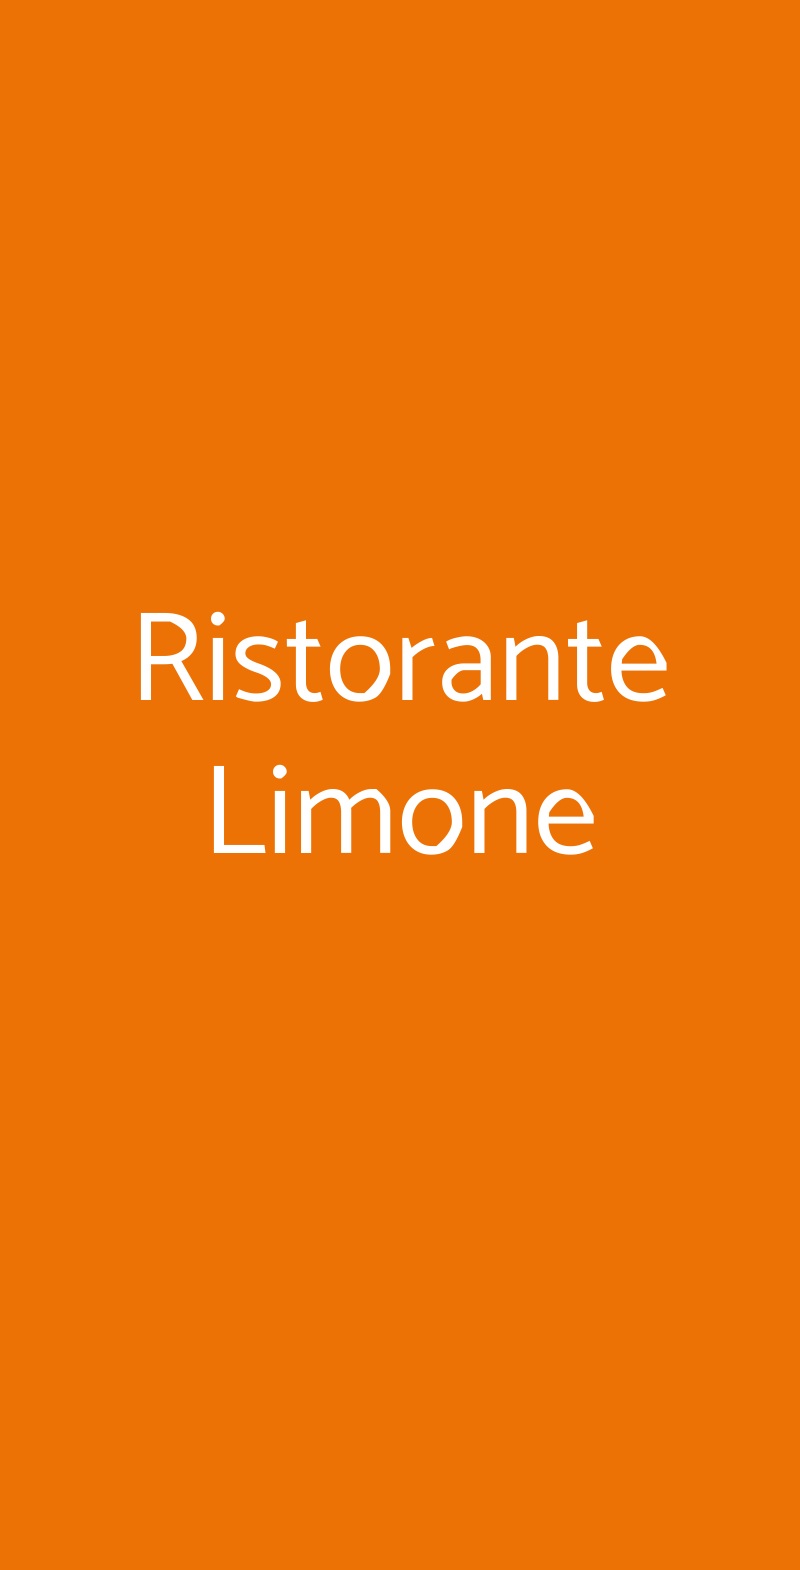 Ristorante Limone Milano menù 1 pagina